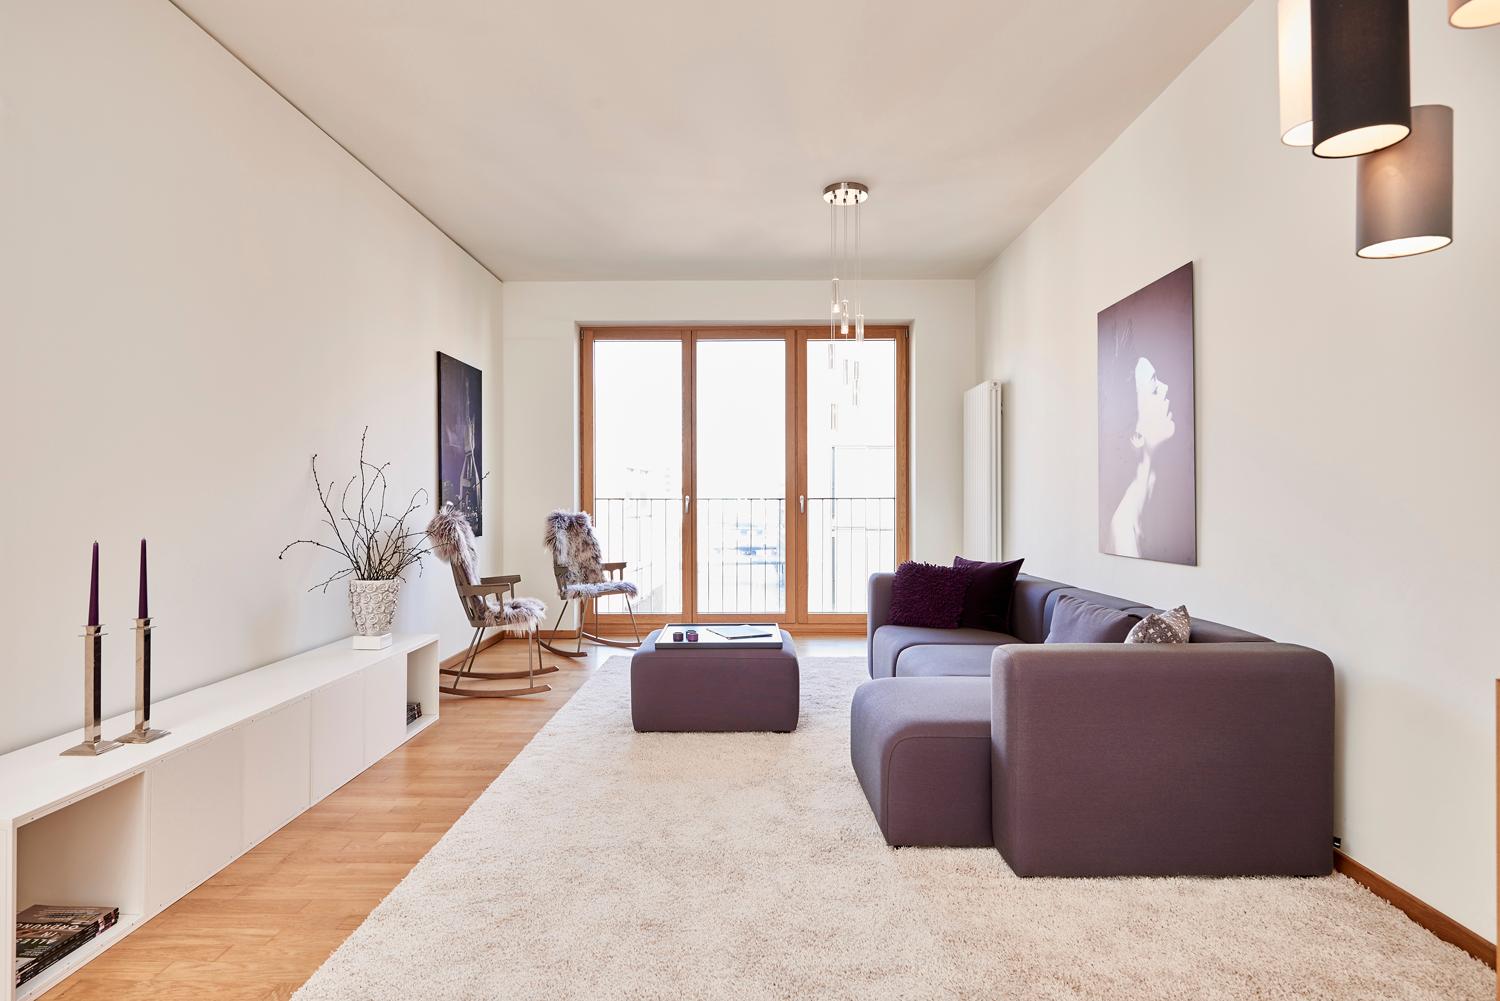 Wohnzimmer mit Sofa und Schaukelstühlen #schaukelstuhl #sofa ©Michael Pfeiffer Fotografie